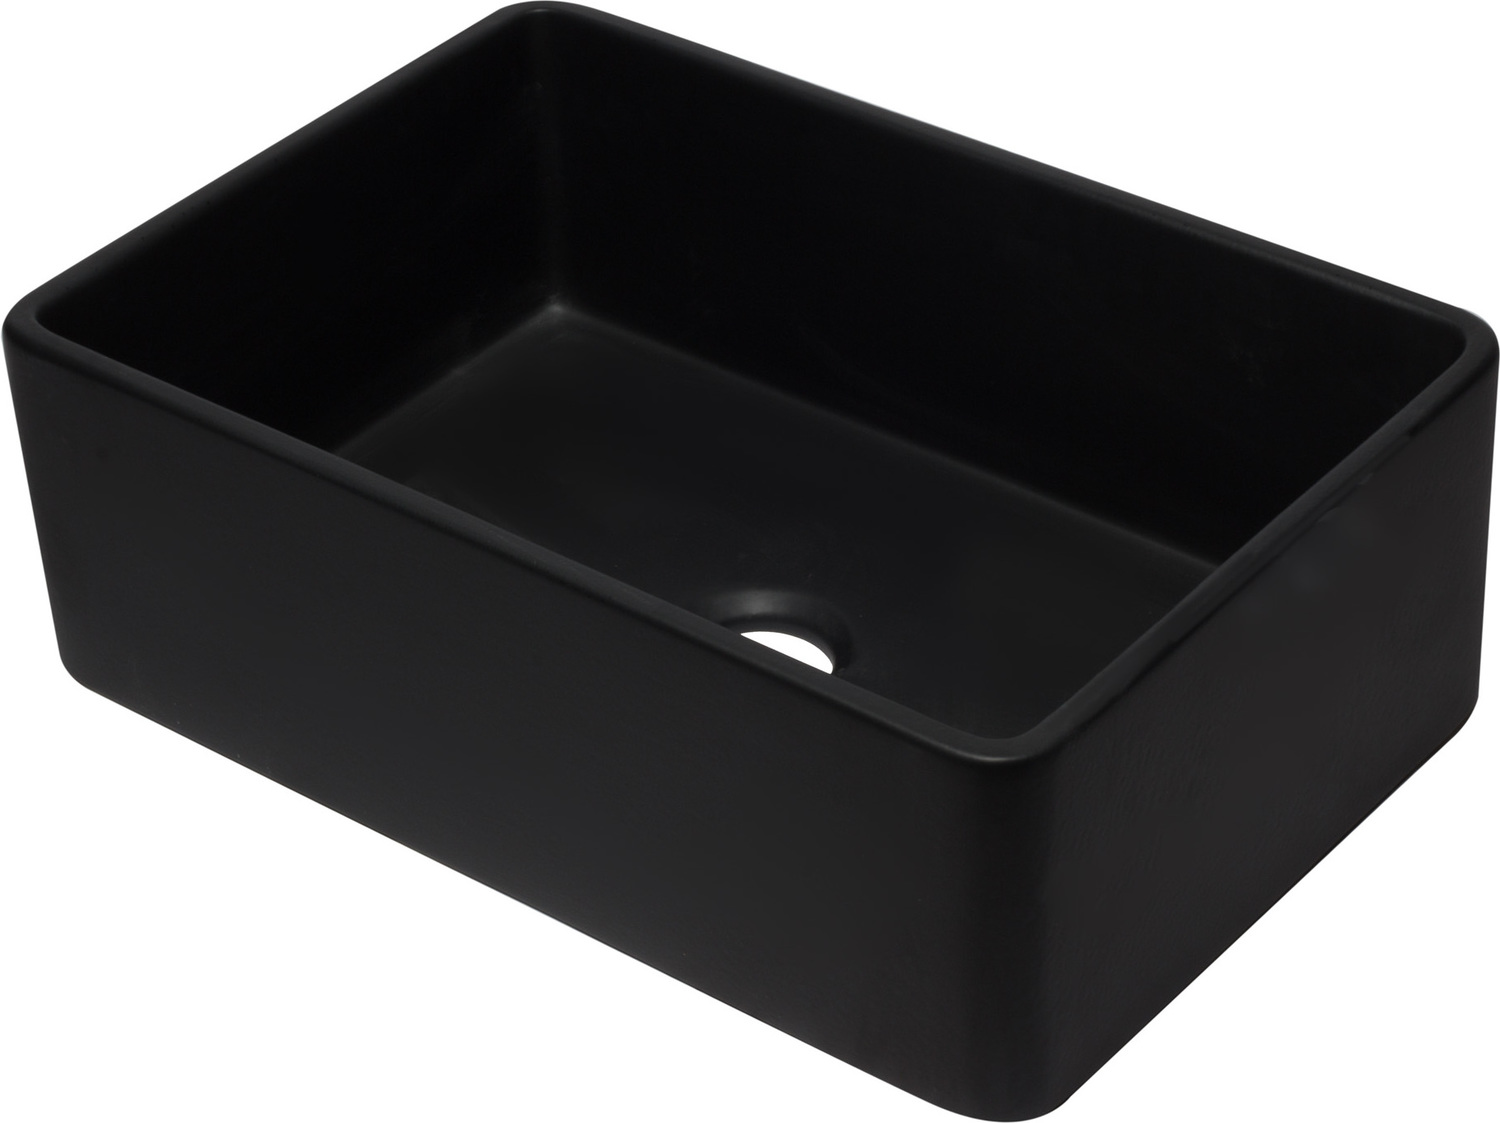  Alfi Kitchen Sink Single Bowl Sinks Black Matte Traditional